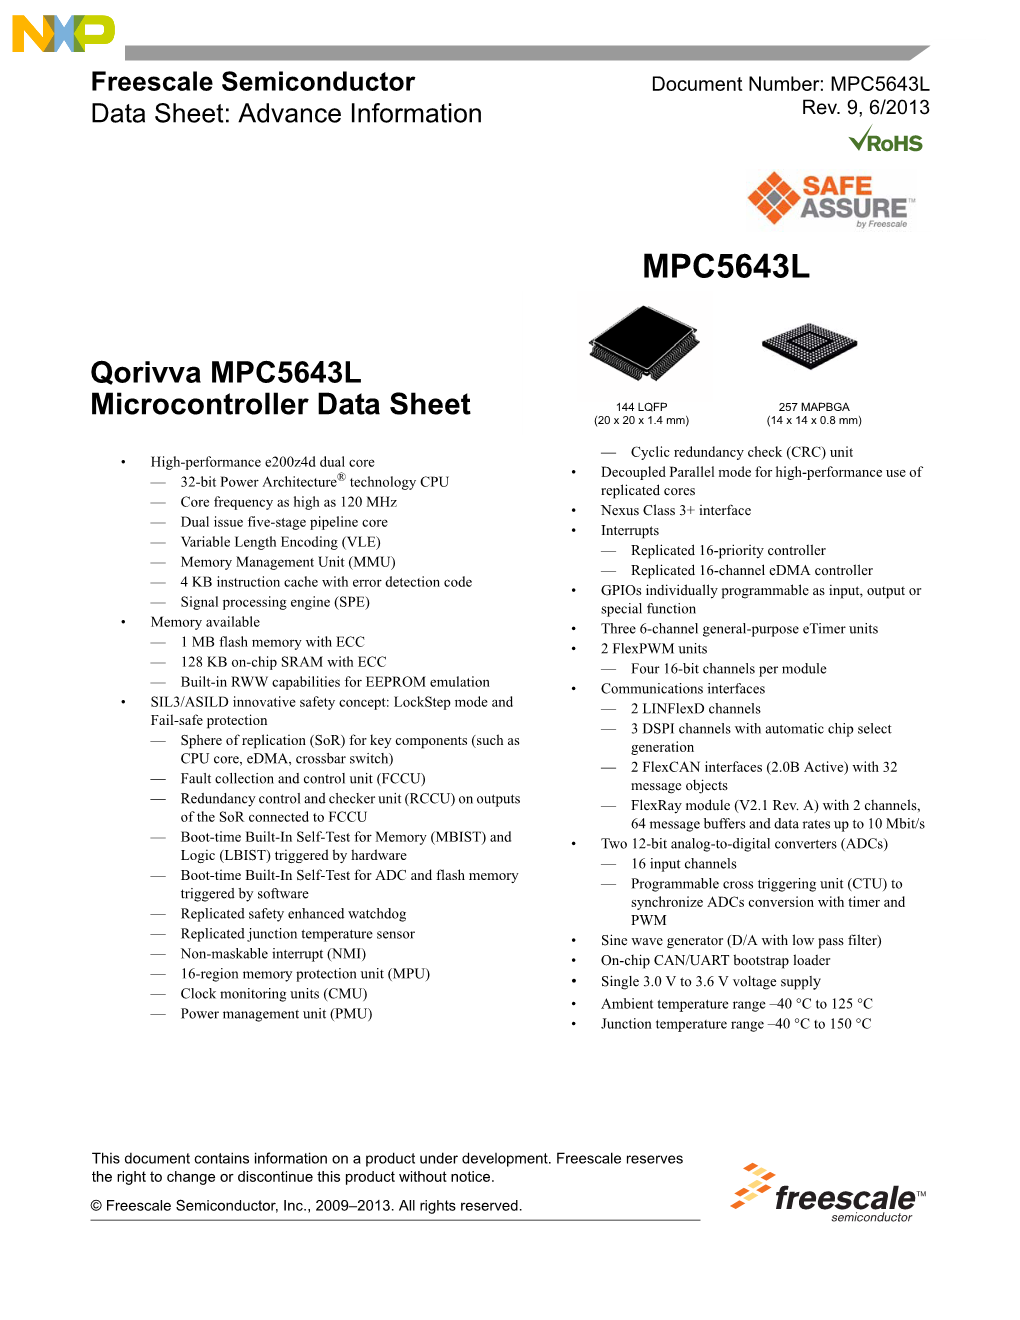 MPC5643L, Qorivva MPC5643L Microcontroller